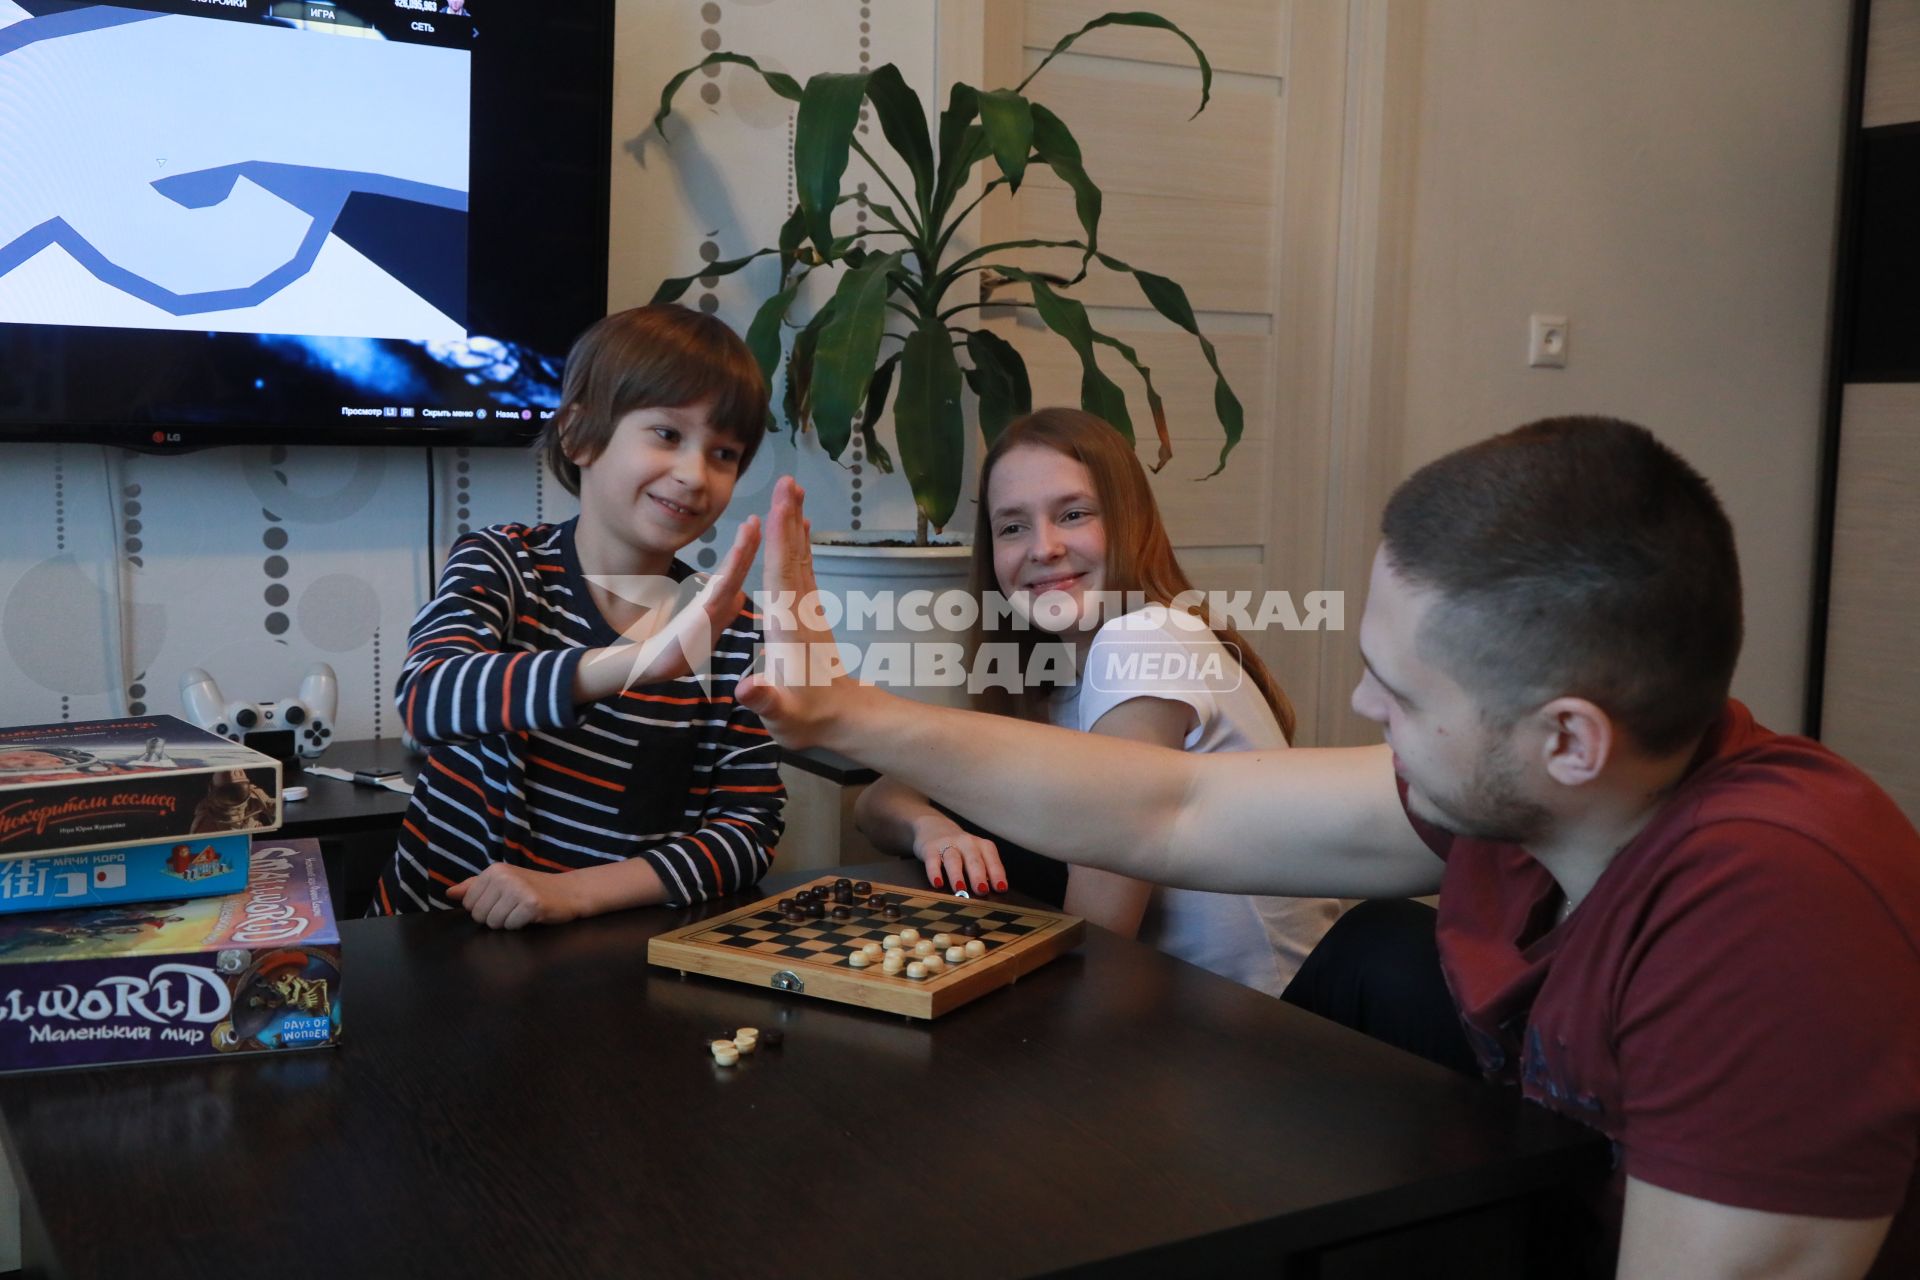 Красноярск. Семья играет в настольные игры в условиях вынужденного карантина и самоизоляции.